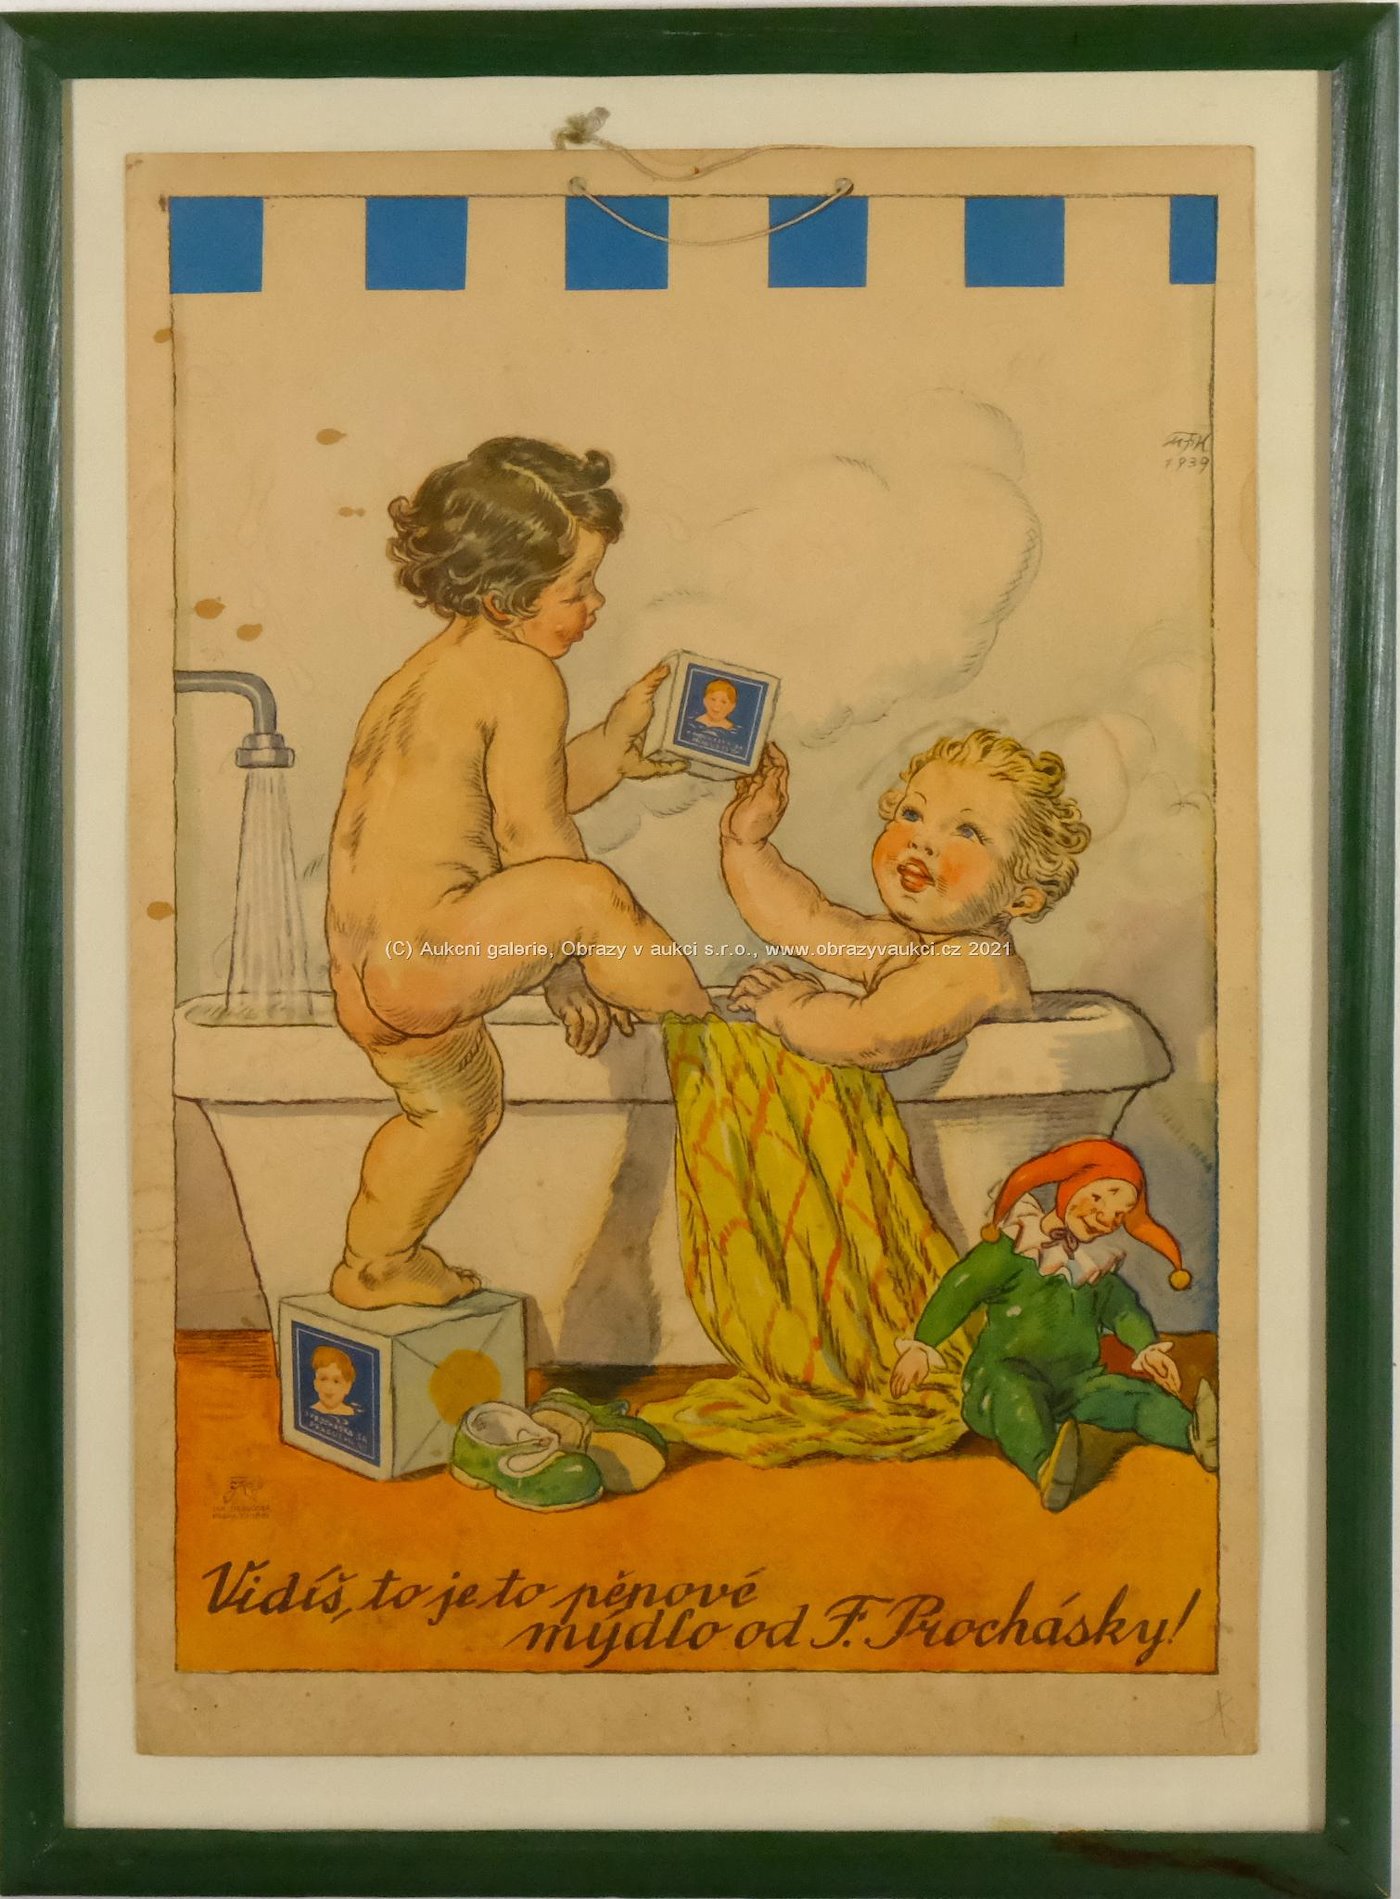 Marie Fischerová - Kvěchová - Vidíš, to je to pěnové mýdlo - Reklamní leták firmy F. Procháska na mýdlo, 1939